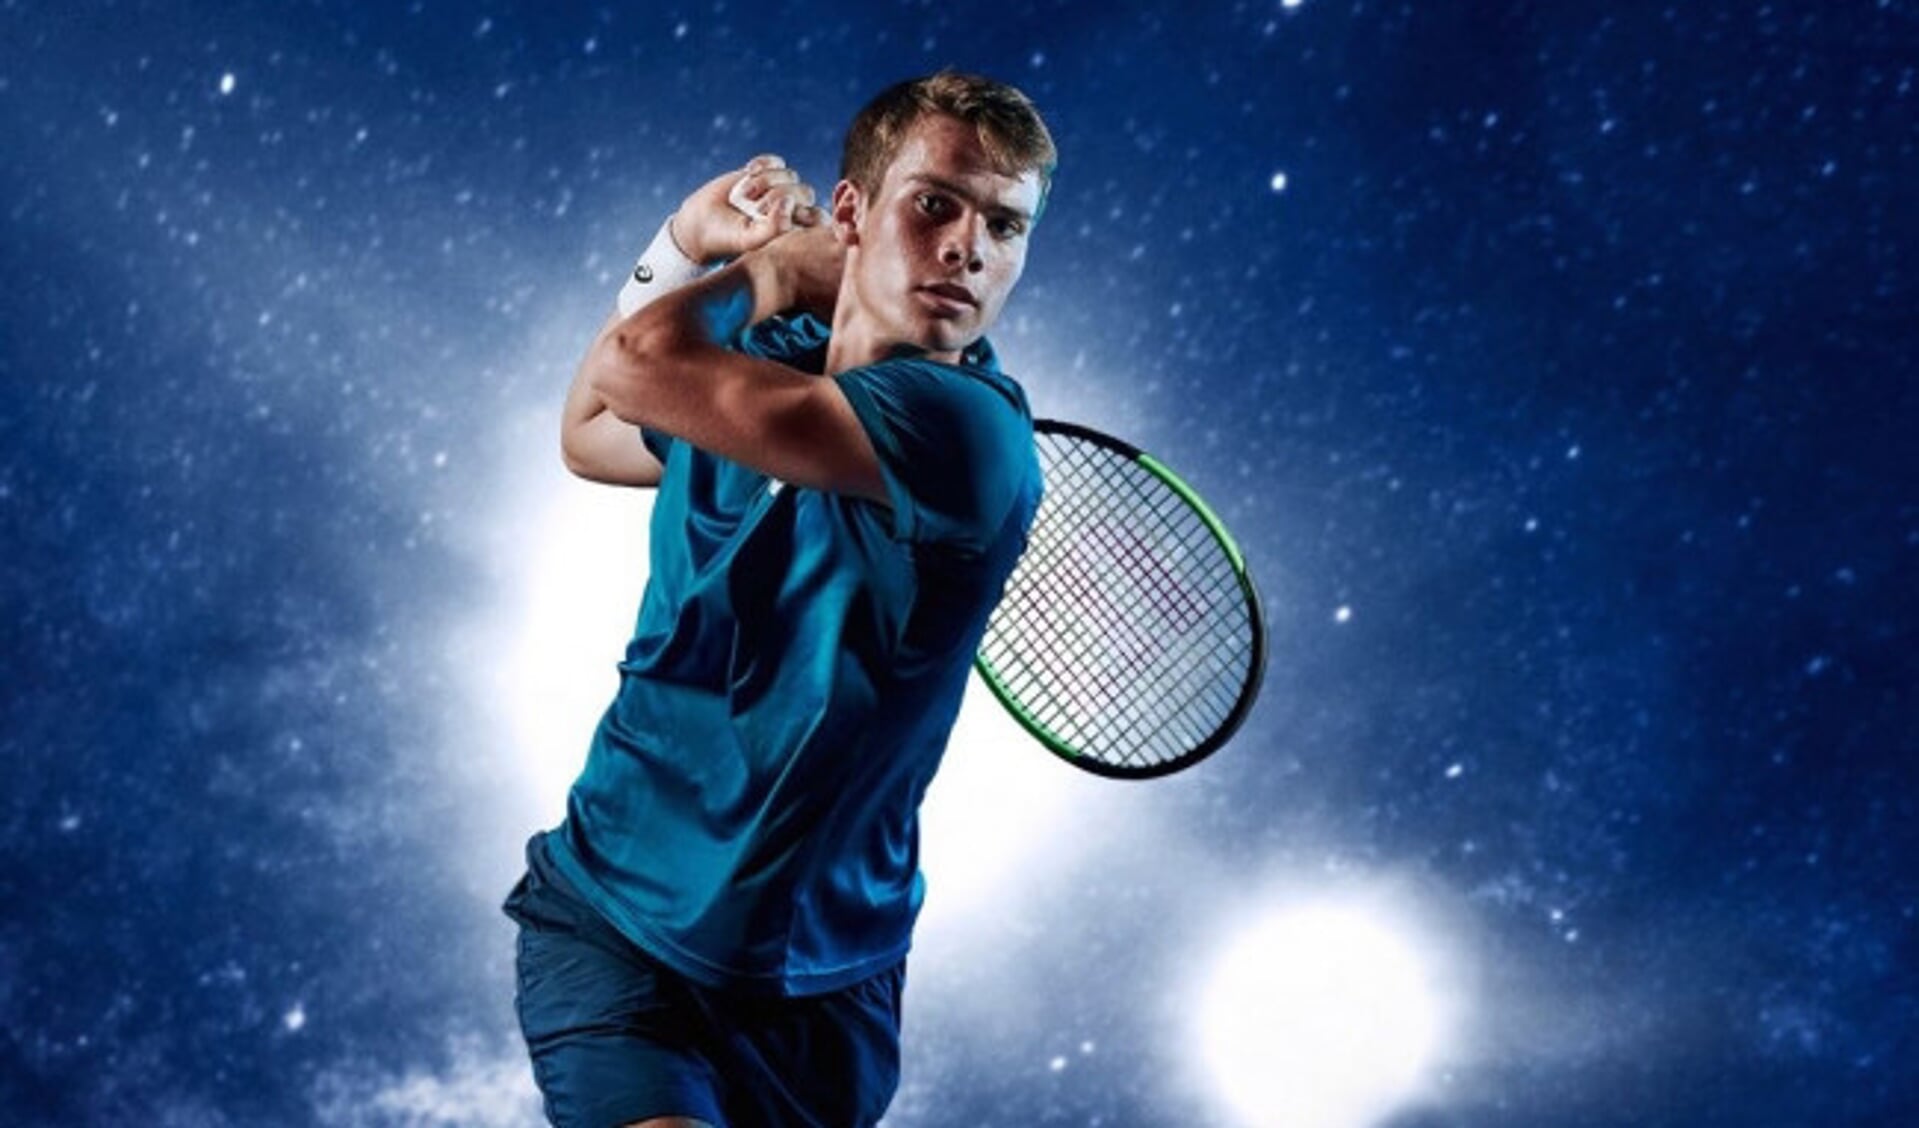 Ryan Nijboer komt in tennis uit voor Haag - De Drontenaar | Nieuws uit de regio Dronten